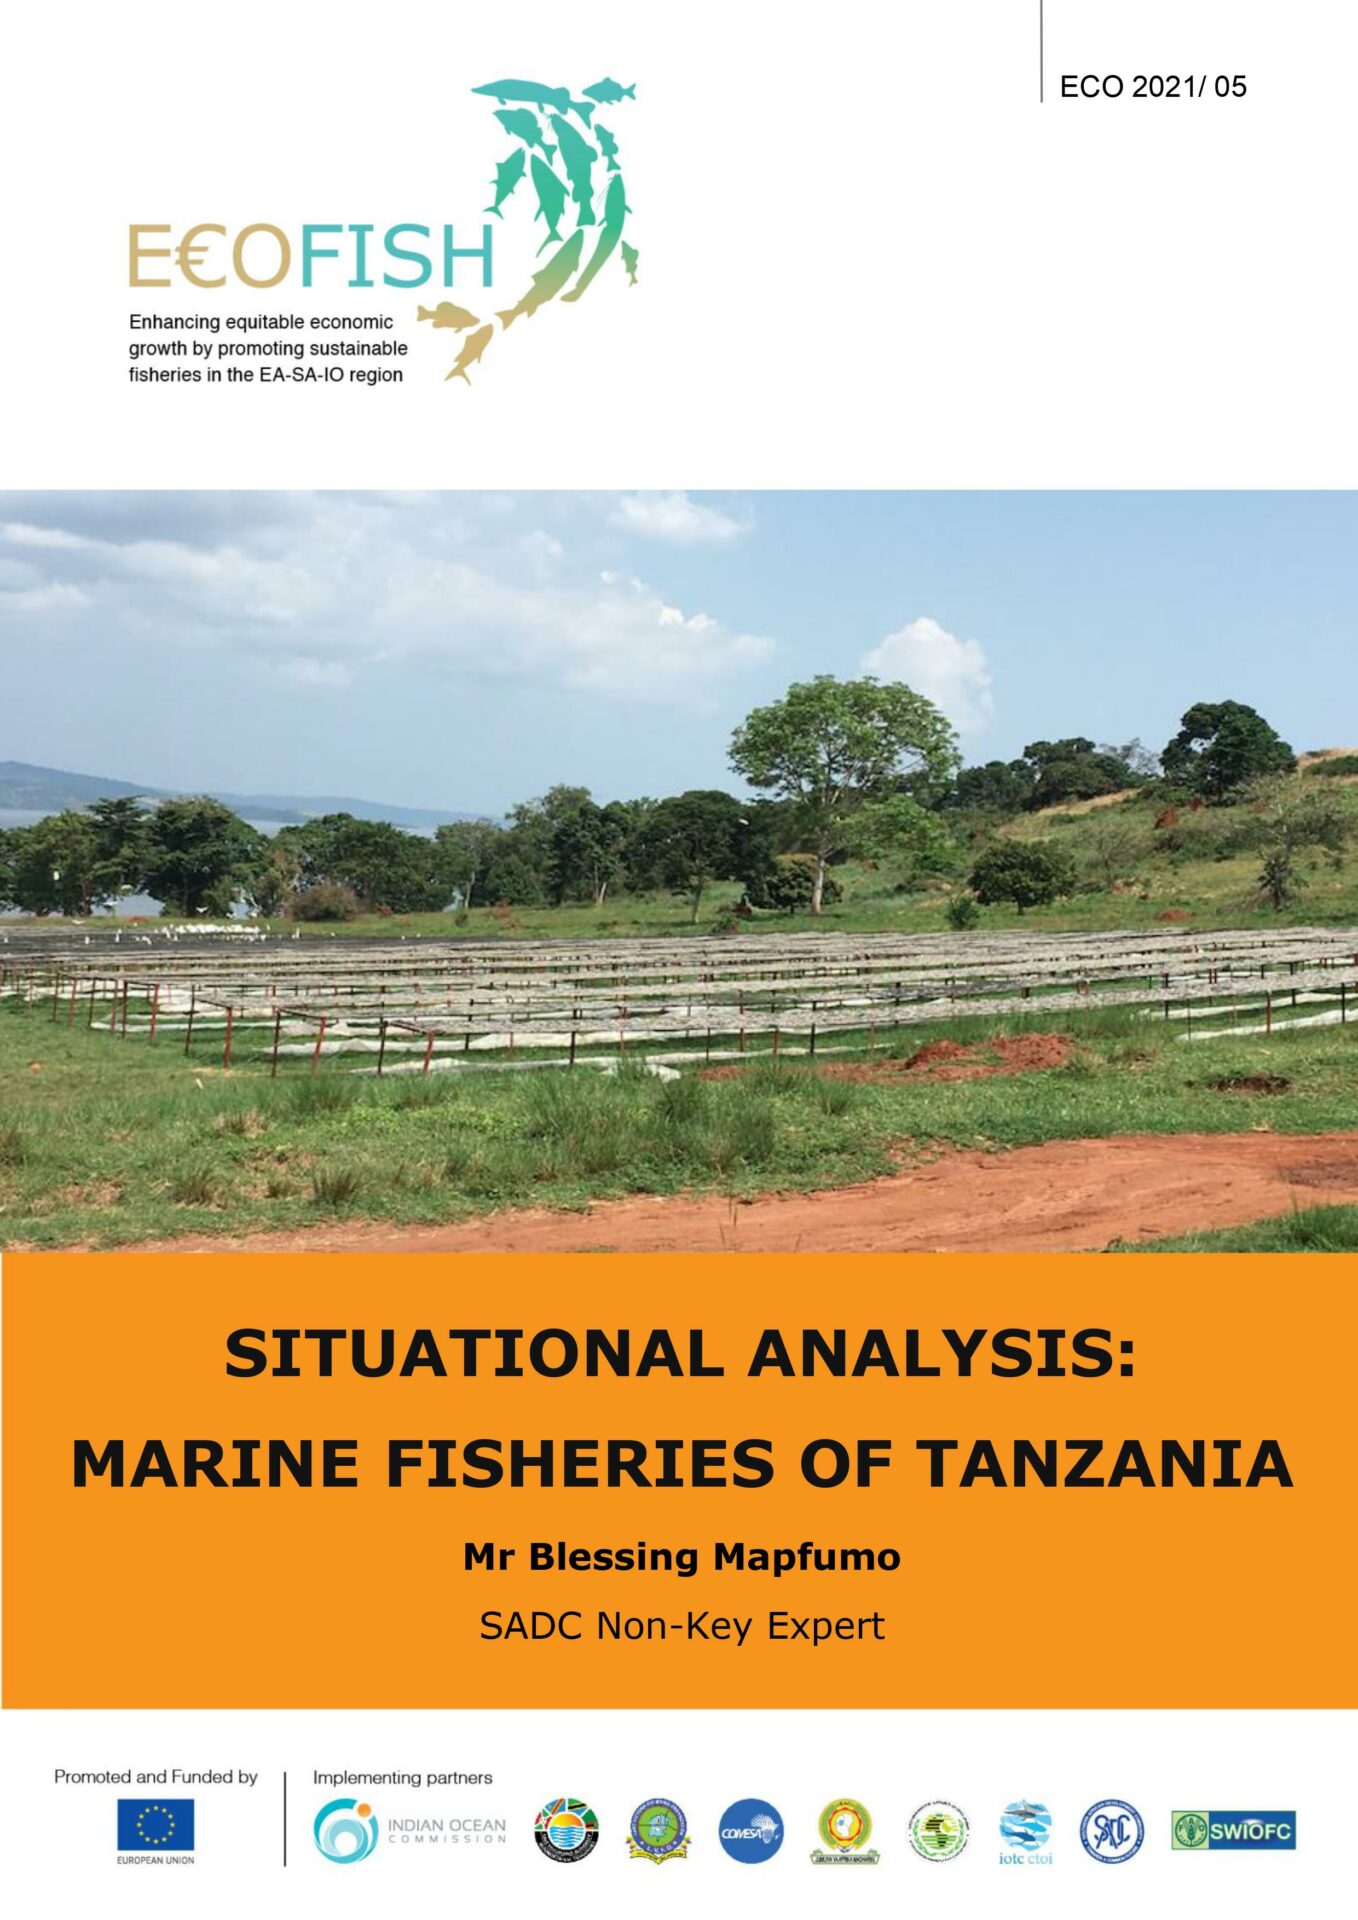 SITUATIONAL ANALYSIS: MARINE FISHERIES OF TANZANIA – Mr Blessing Mapfumo